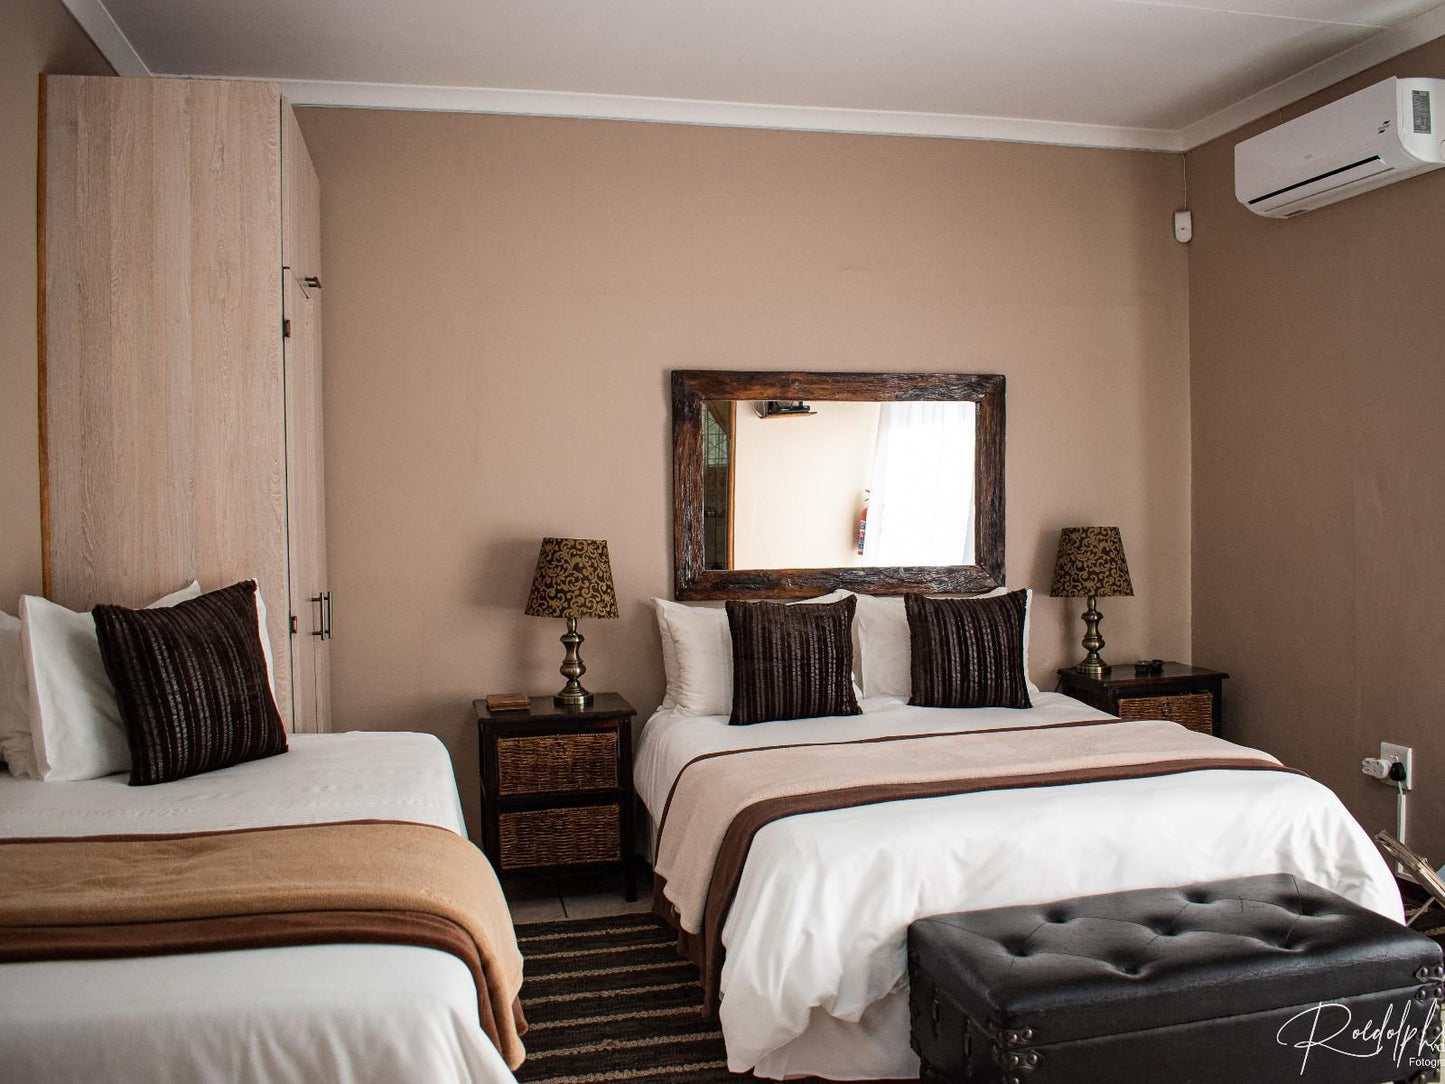 Oppiplot De Aar Northern Cape South Africa Bedroom